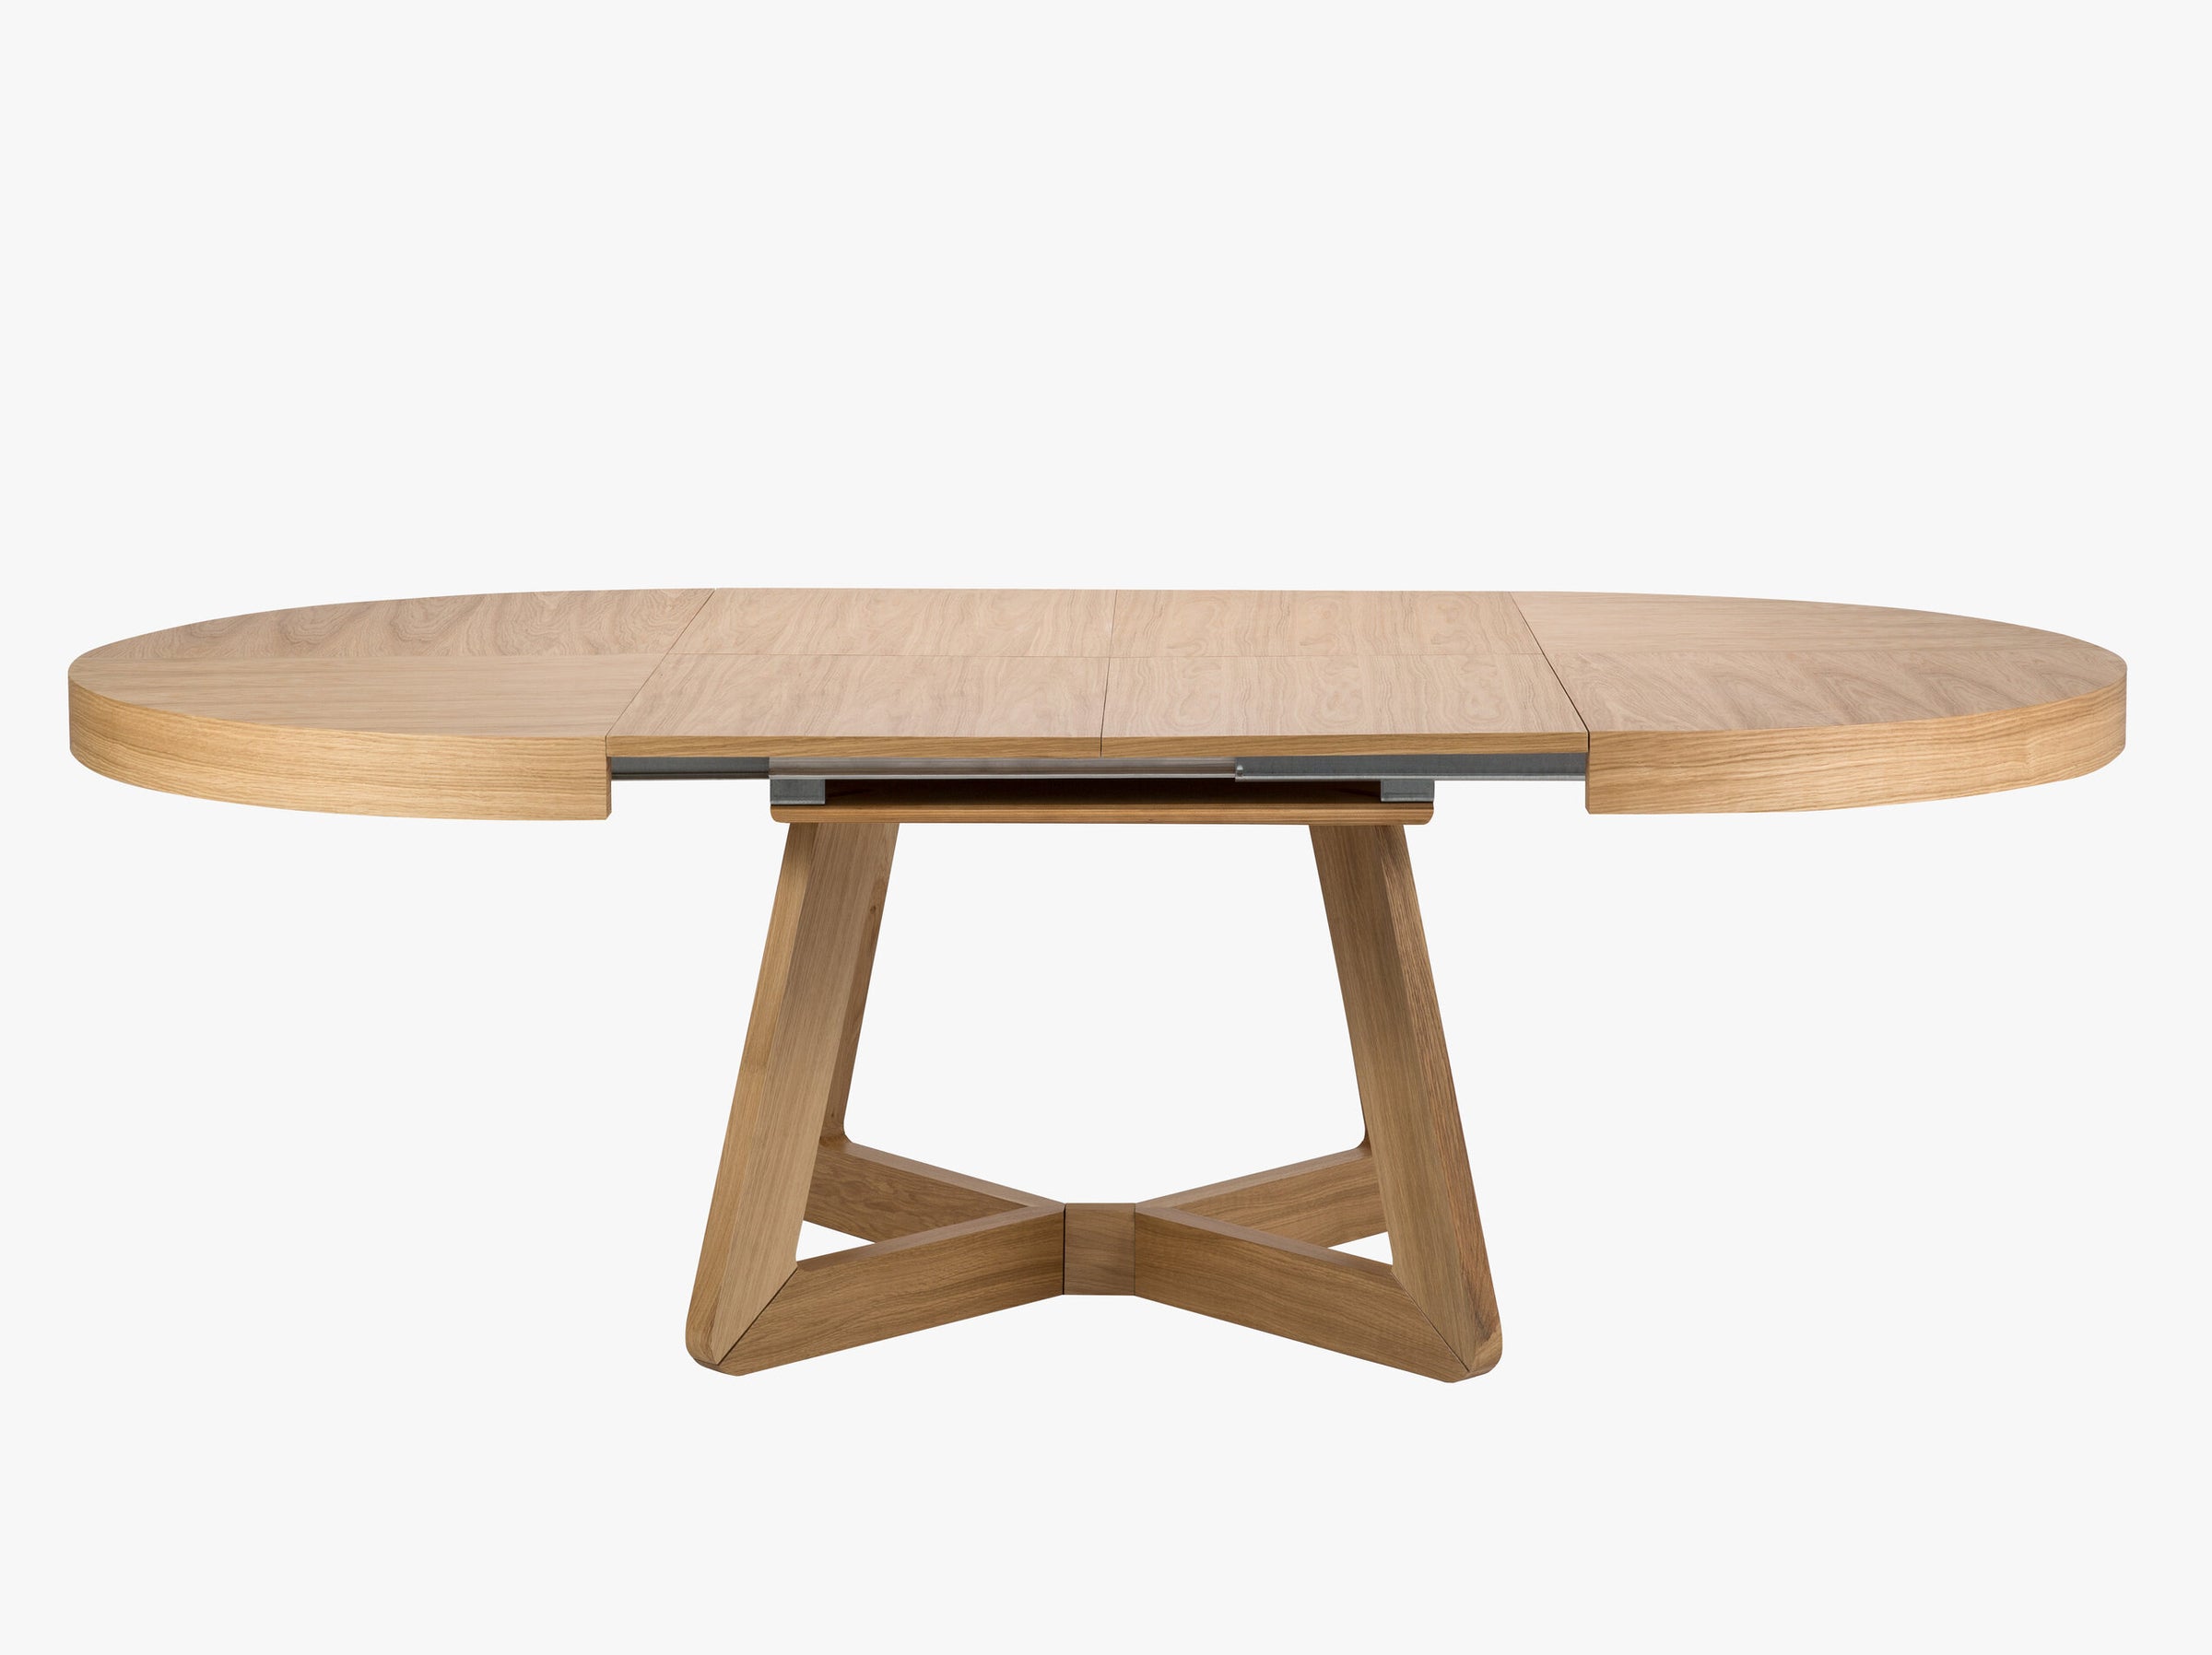 Dustin tables & chairs wood natural oak veneer